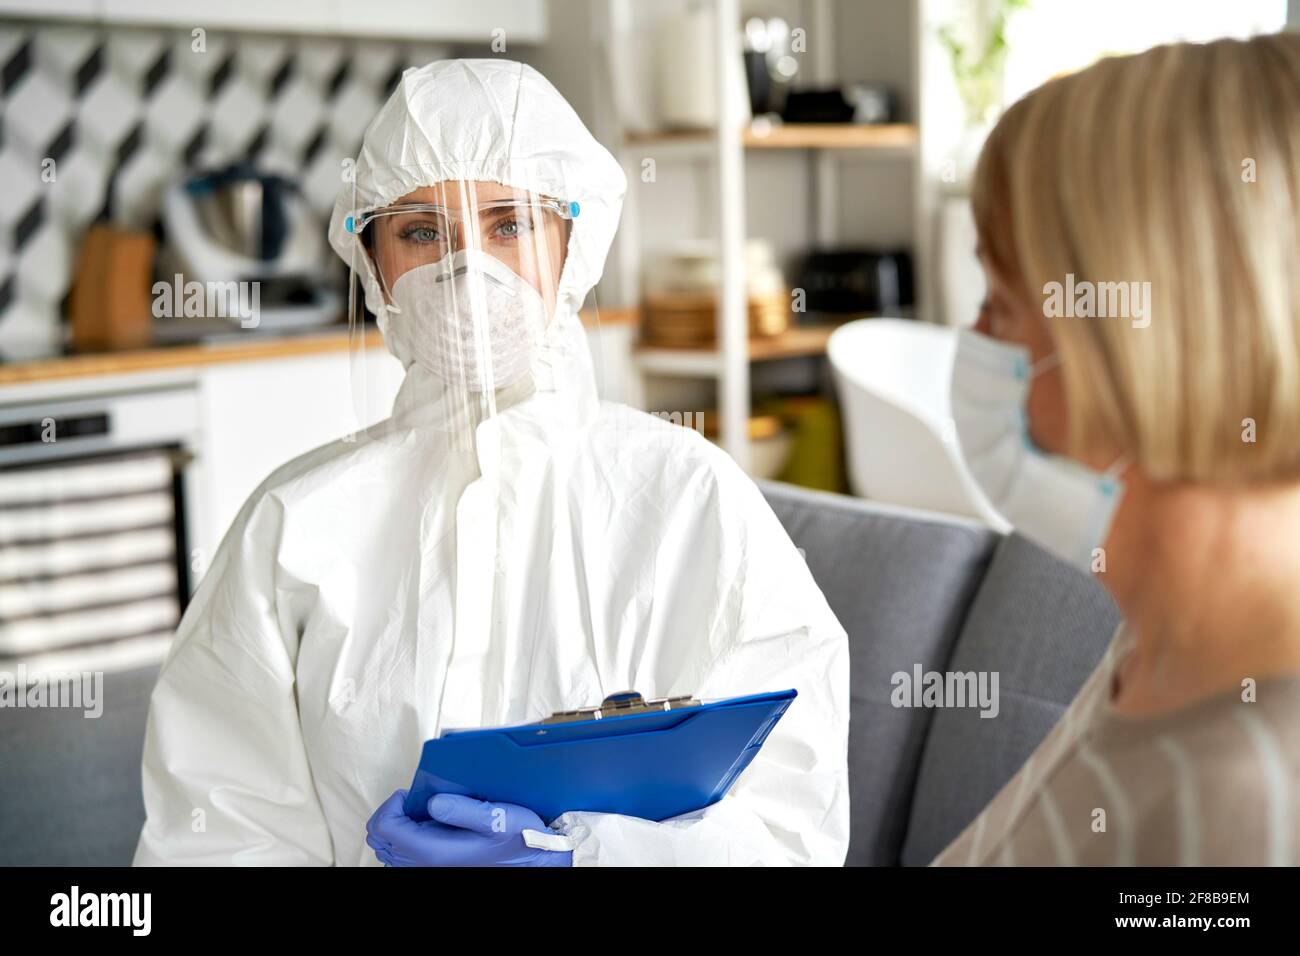 Porträt eines medizinischen Arbeiters in schützender Arbeitskleidung während eines Heims Besuchen Sie Stockfoto